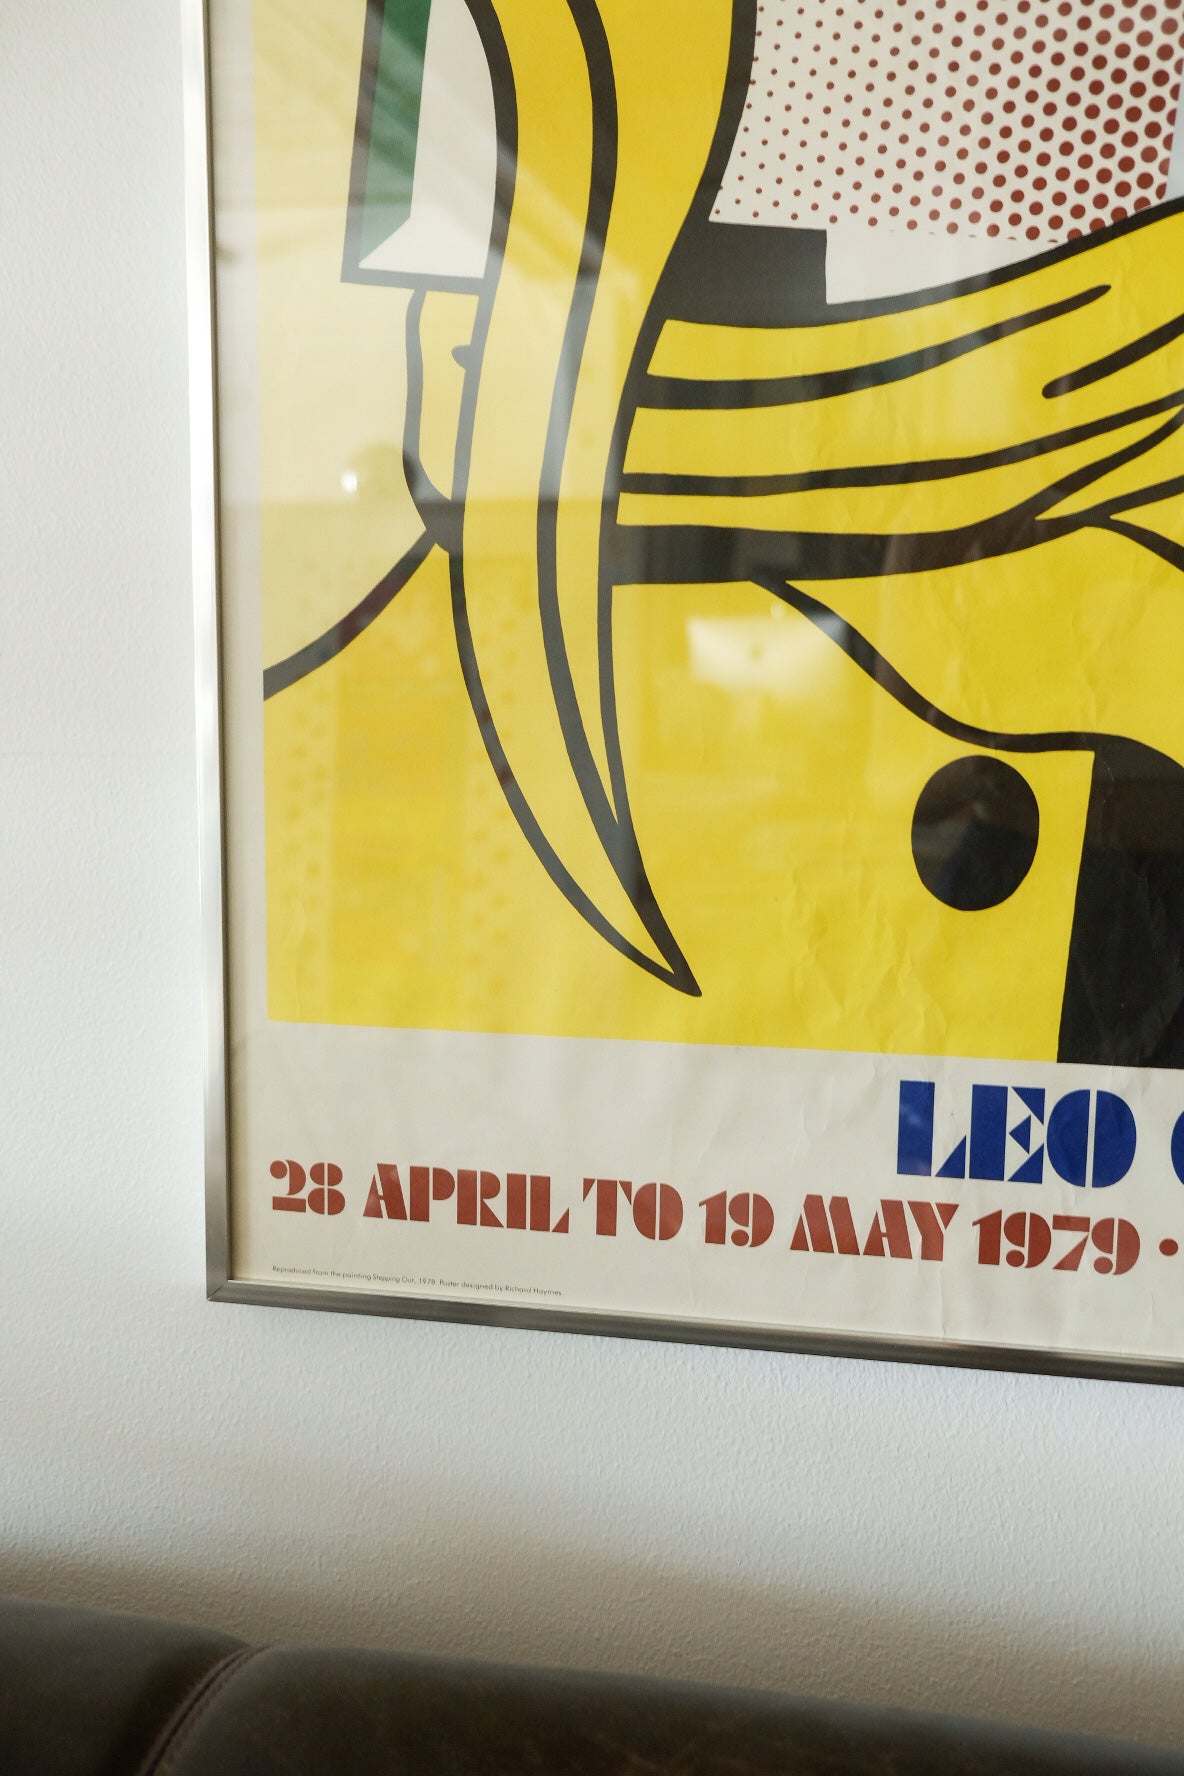 Lichtenstein Exhibition Frame Print - Leo Castelli Gallery 1979